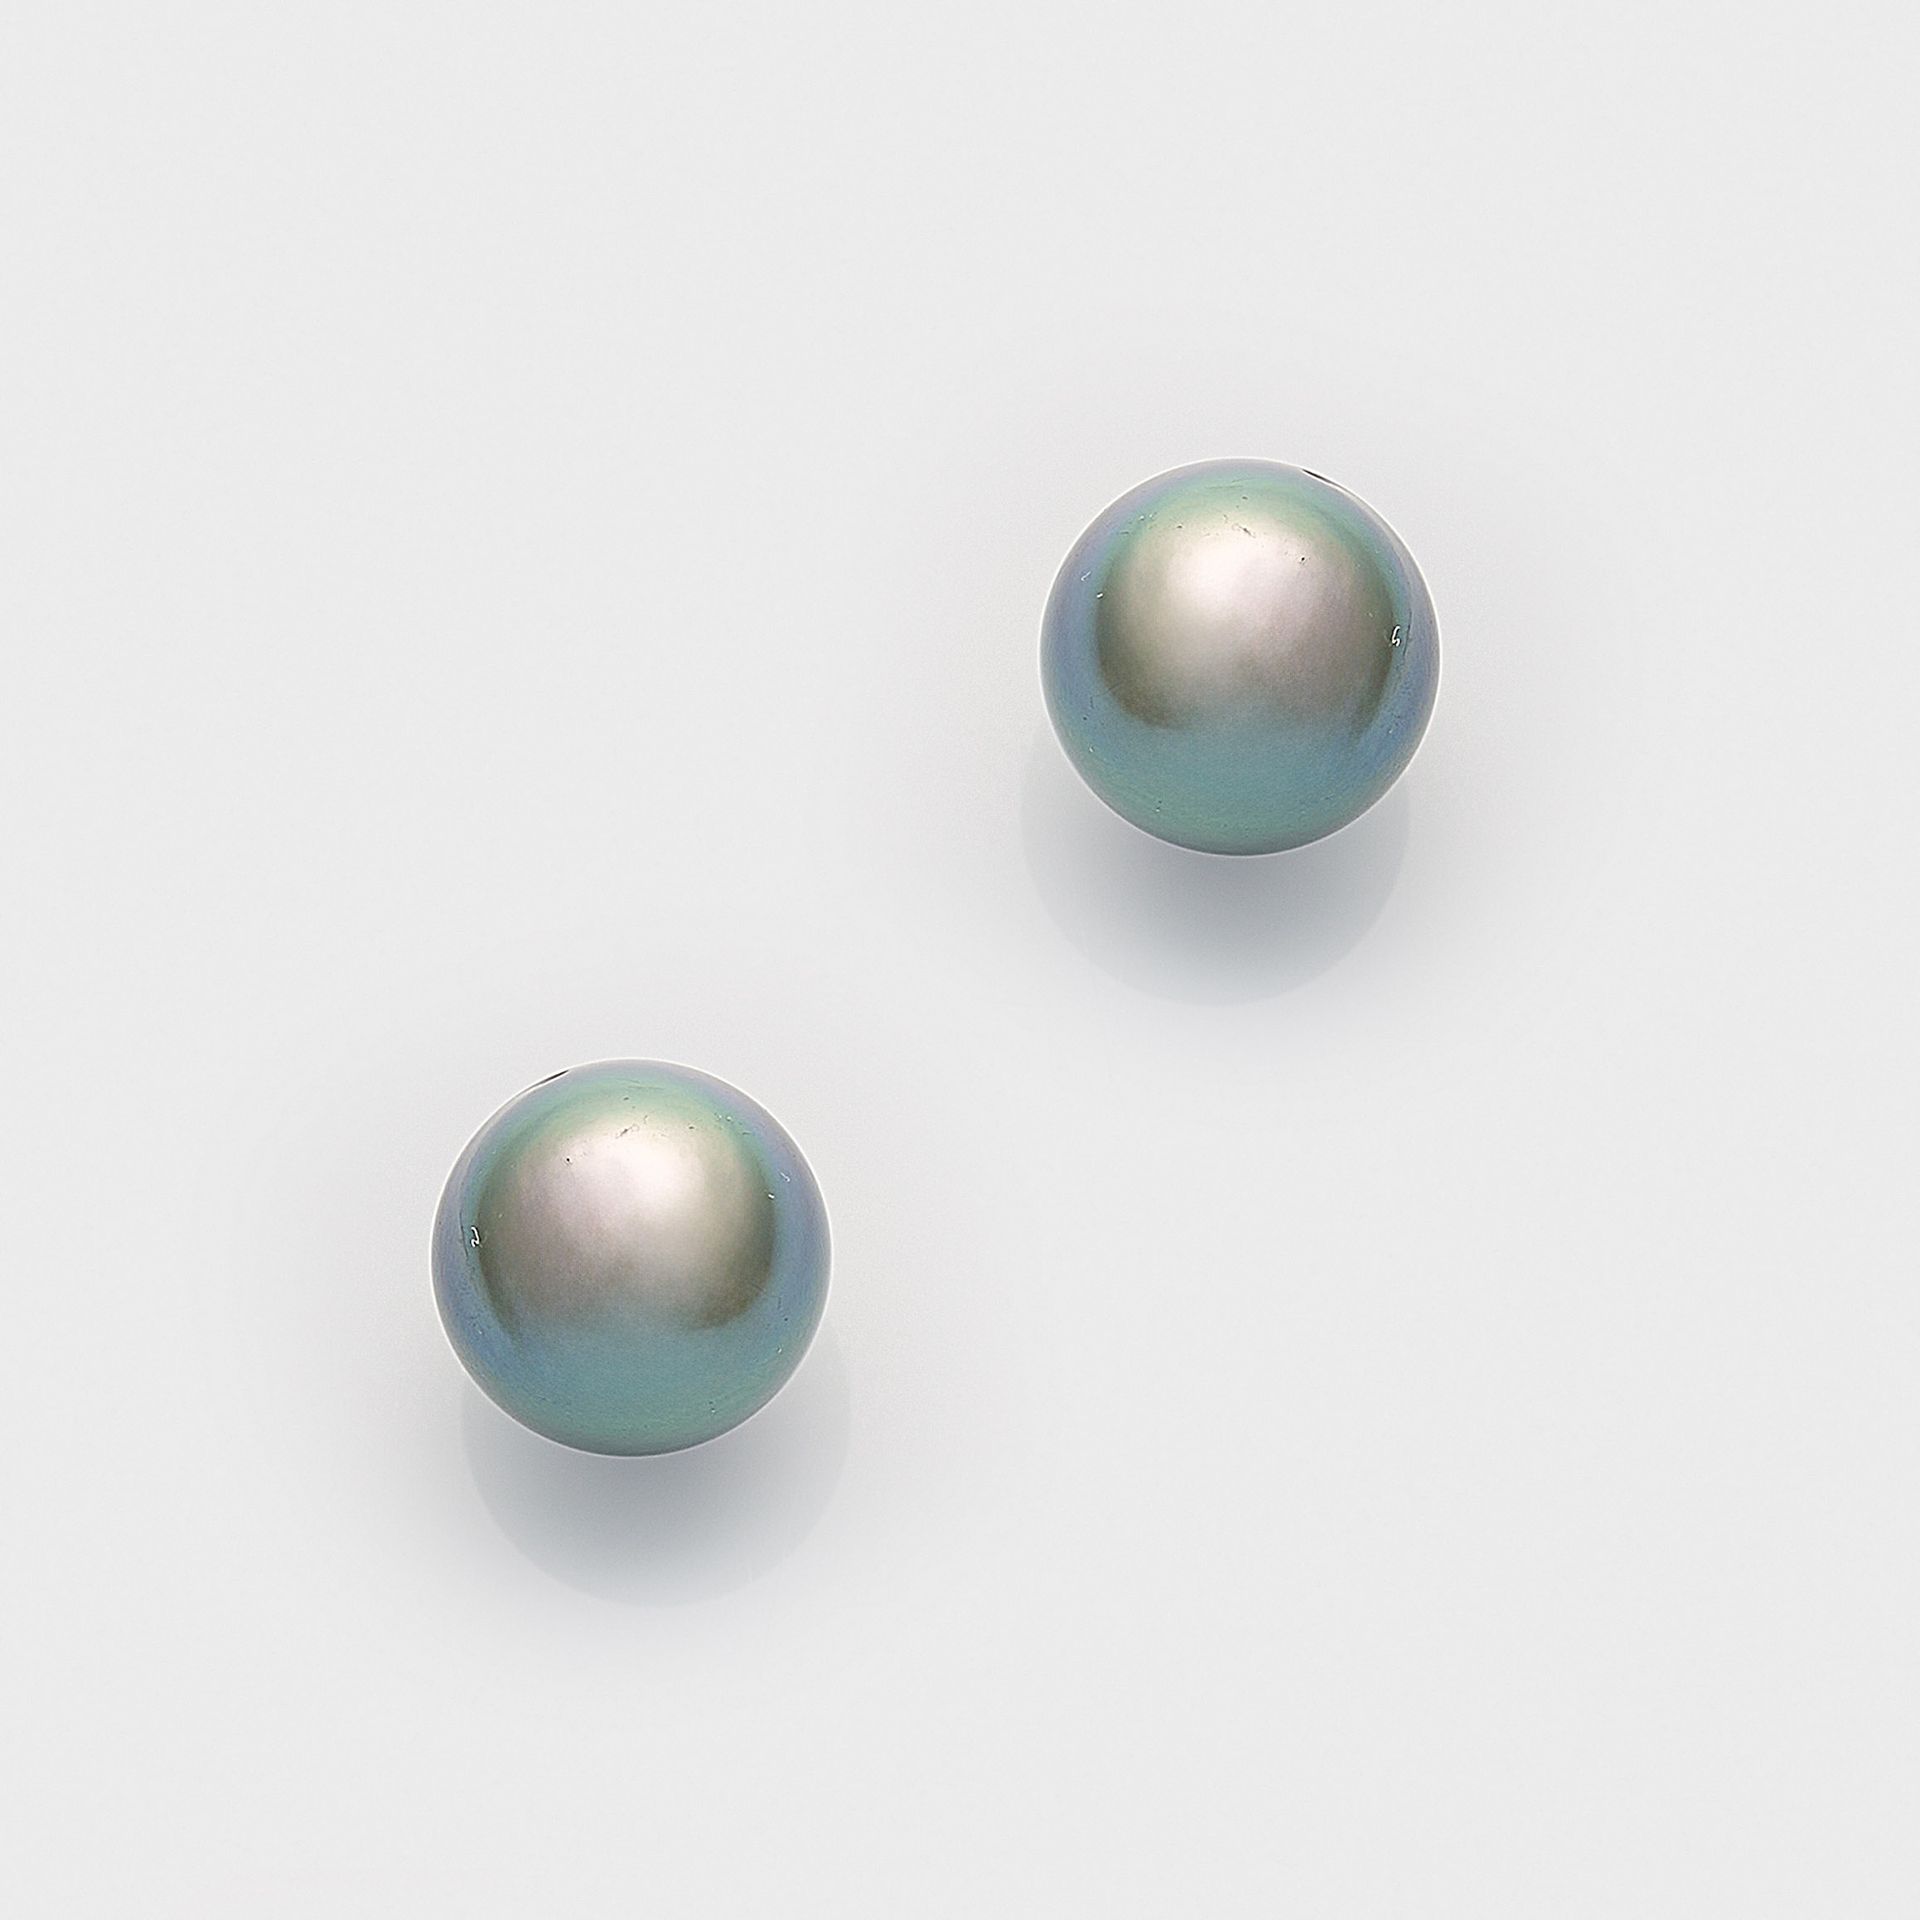 Null 一对经典的大溪地珍珠耳环，白金材质，铸币 585。 烟灰色无瑕大溪地珍珠，直径约 11.2 毫米，具有非常细腻的紫绿色光泽。
一对大溪地珍珠耳环，长约&hellip;